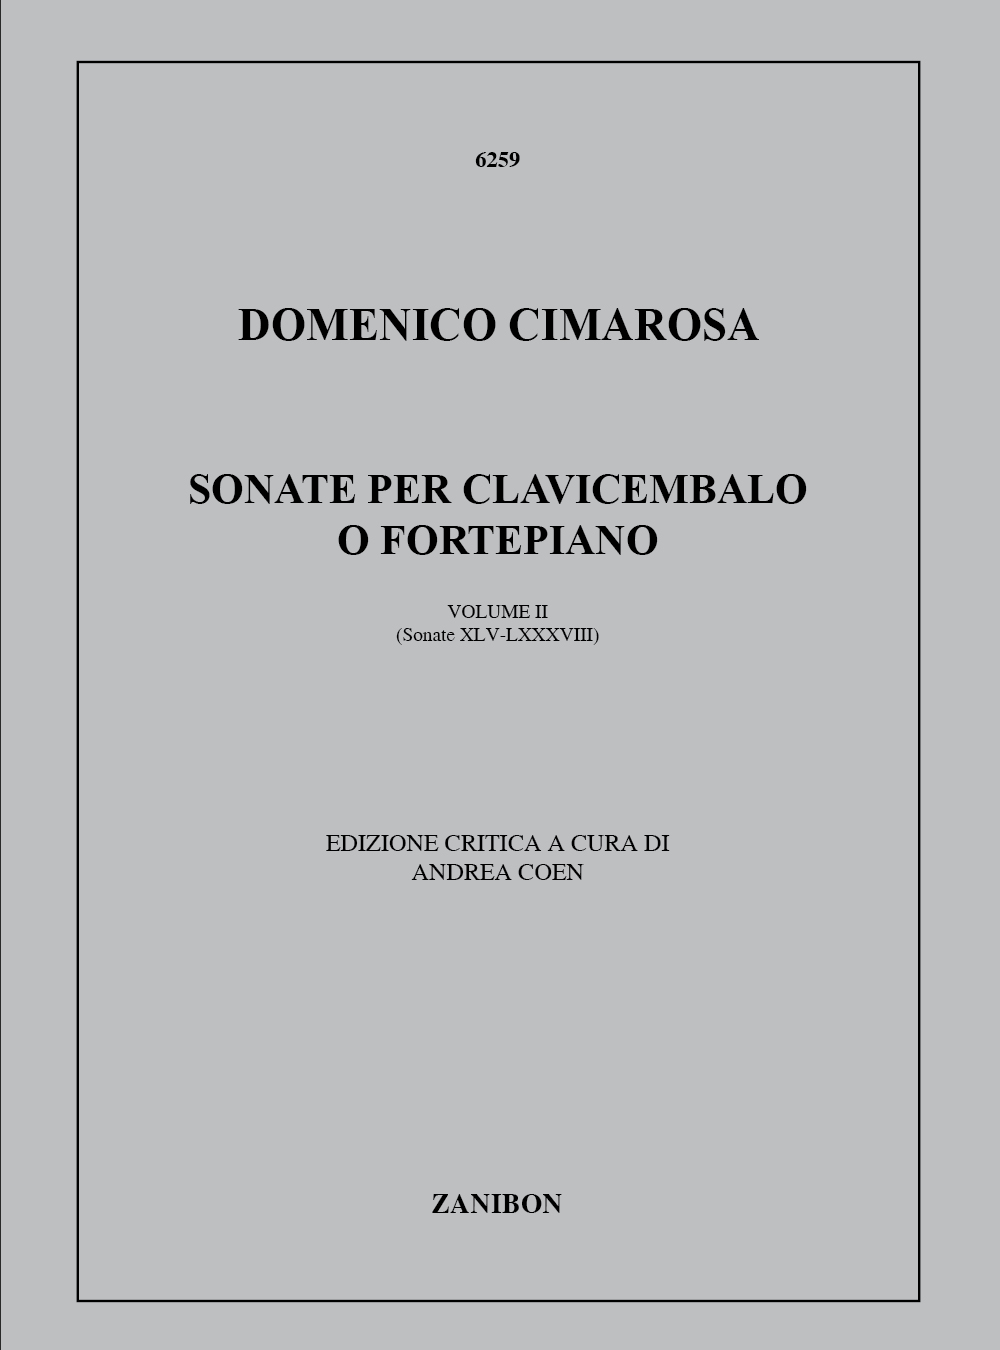 88 Sonate Per Clavicembalo O Fortepiano 2 (45-88): Softcover, Clavicembalo O 2 Clavicembali. 9790520011396